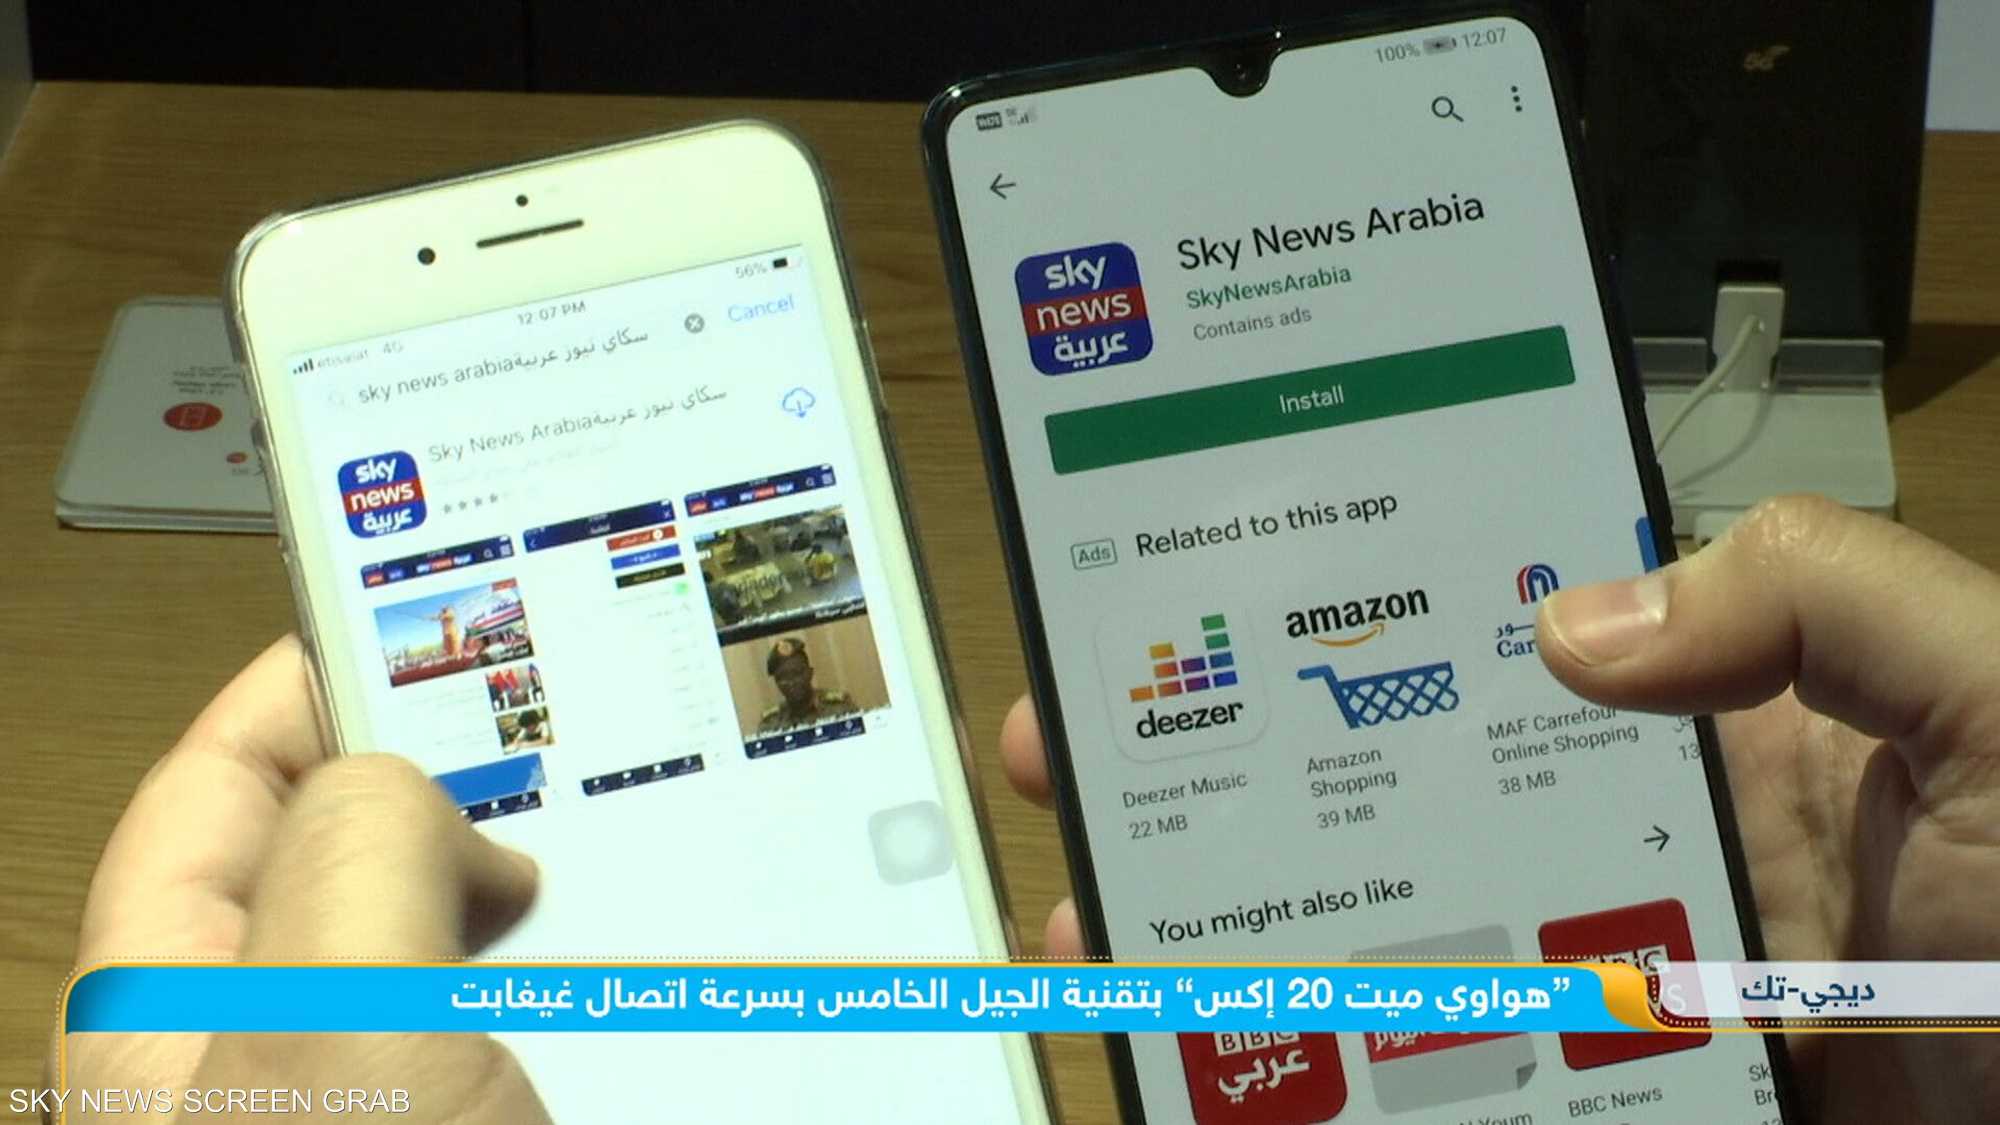 "اتصالات" الإماراتية تطرح "هواوي ميت 20 إكس" بتقنية "5G"